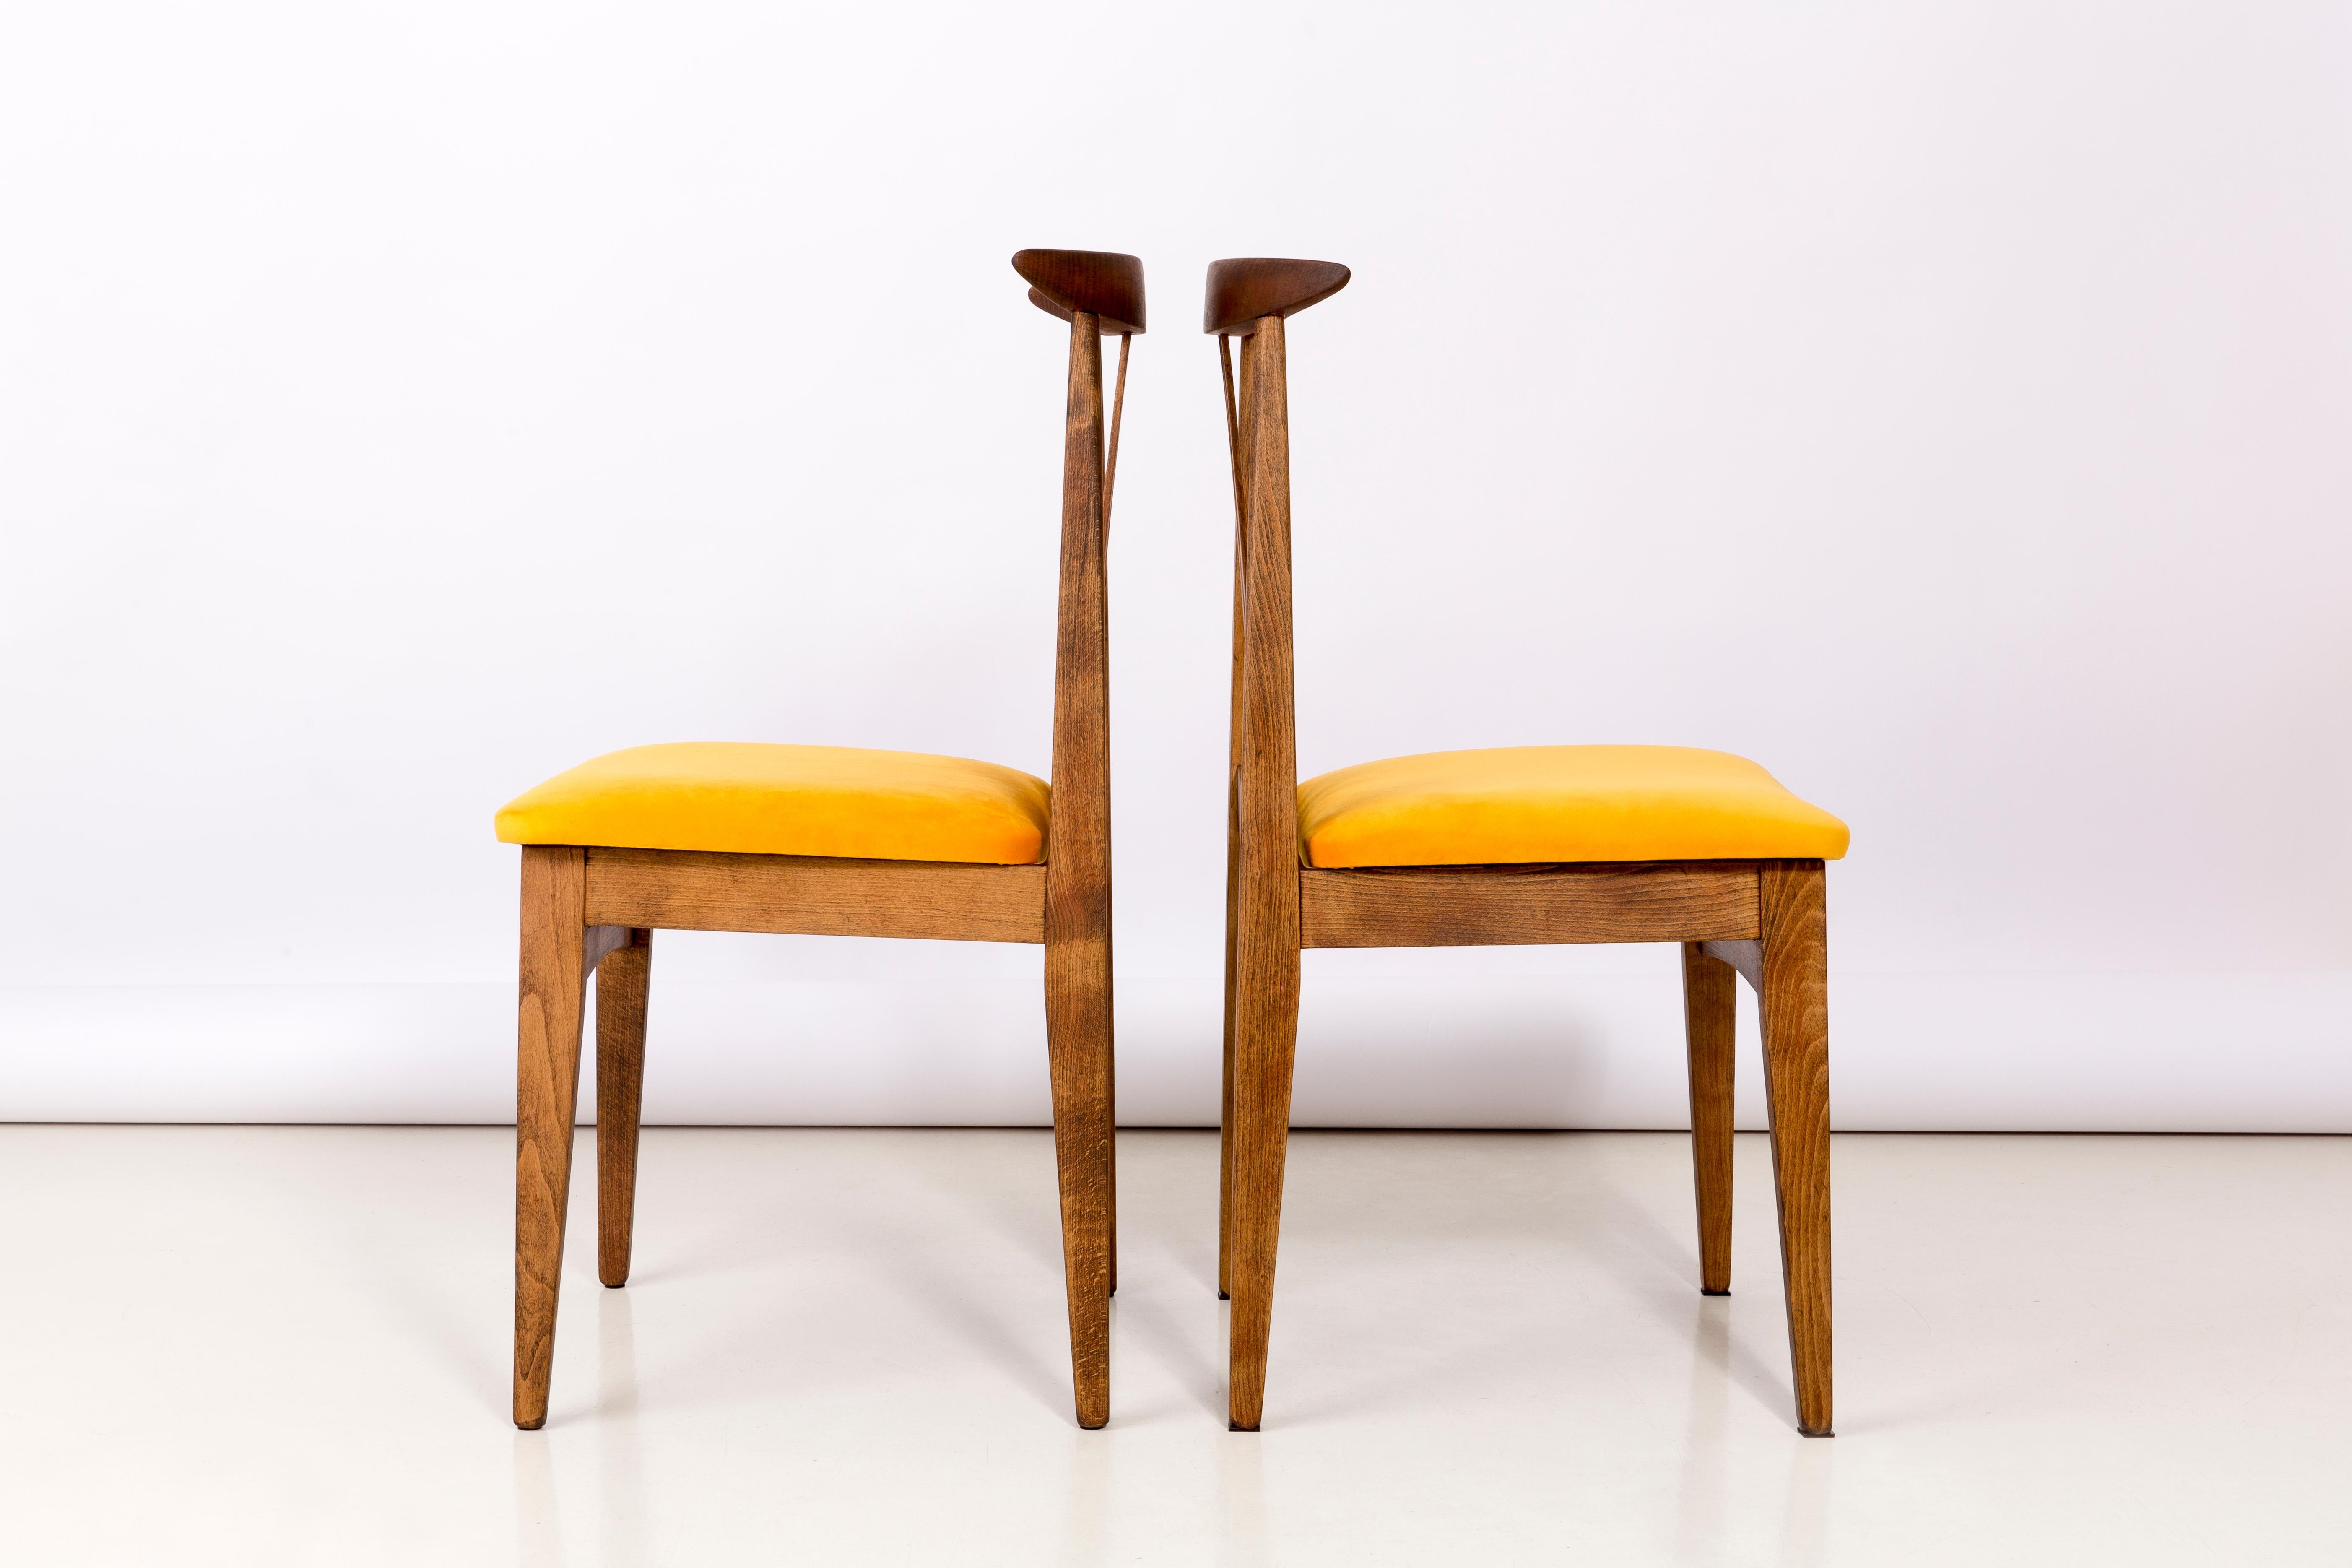 Satz von zwei Buchenholzstühlen, entworfen von M. Zielinski, Typ 200 / 100B. Hergestellt vom Opole Furniture Industry Center Ende der 1960er Jahre in Polen. Die Stühle wurden komplett neu geschreinert und gepolstert. Die Sitze sind mit hochwertigem